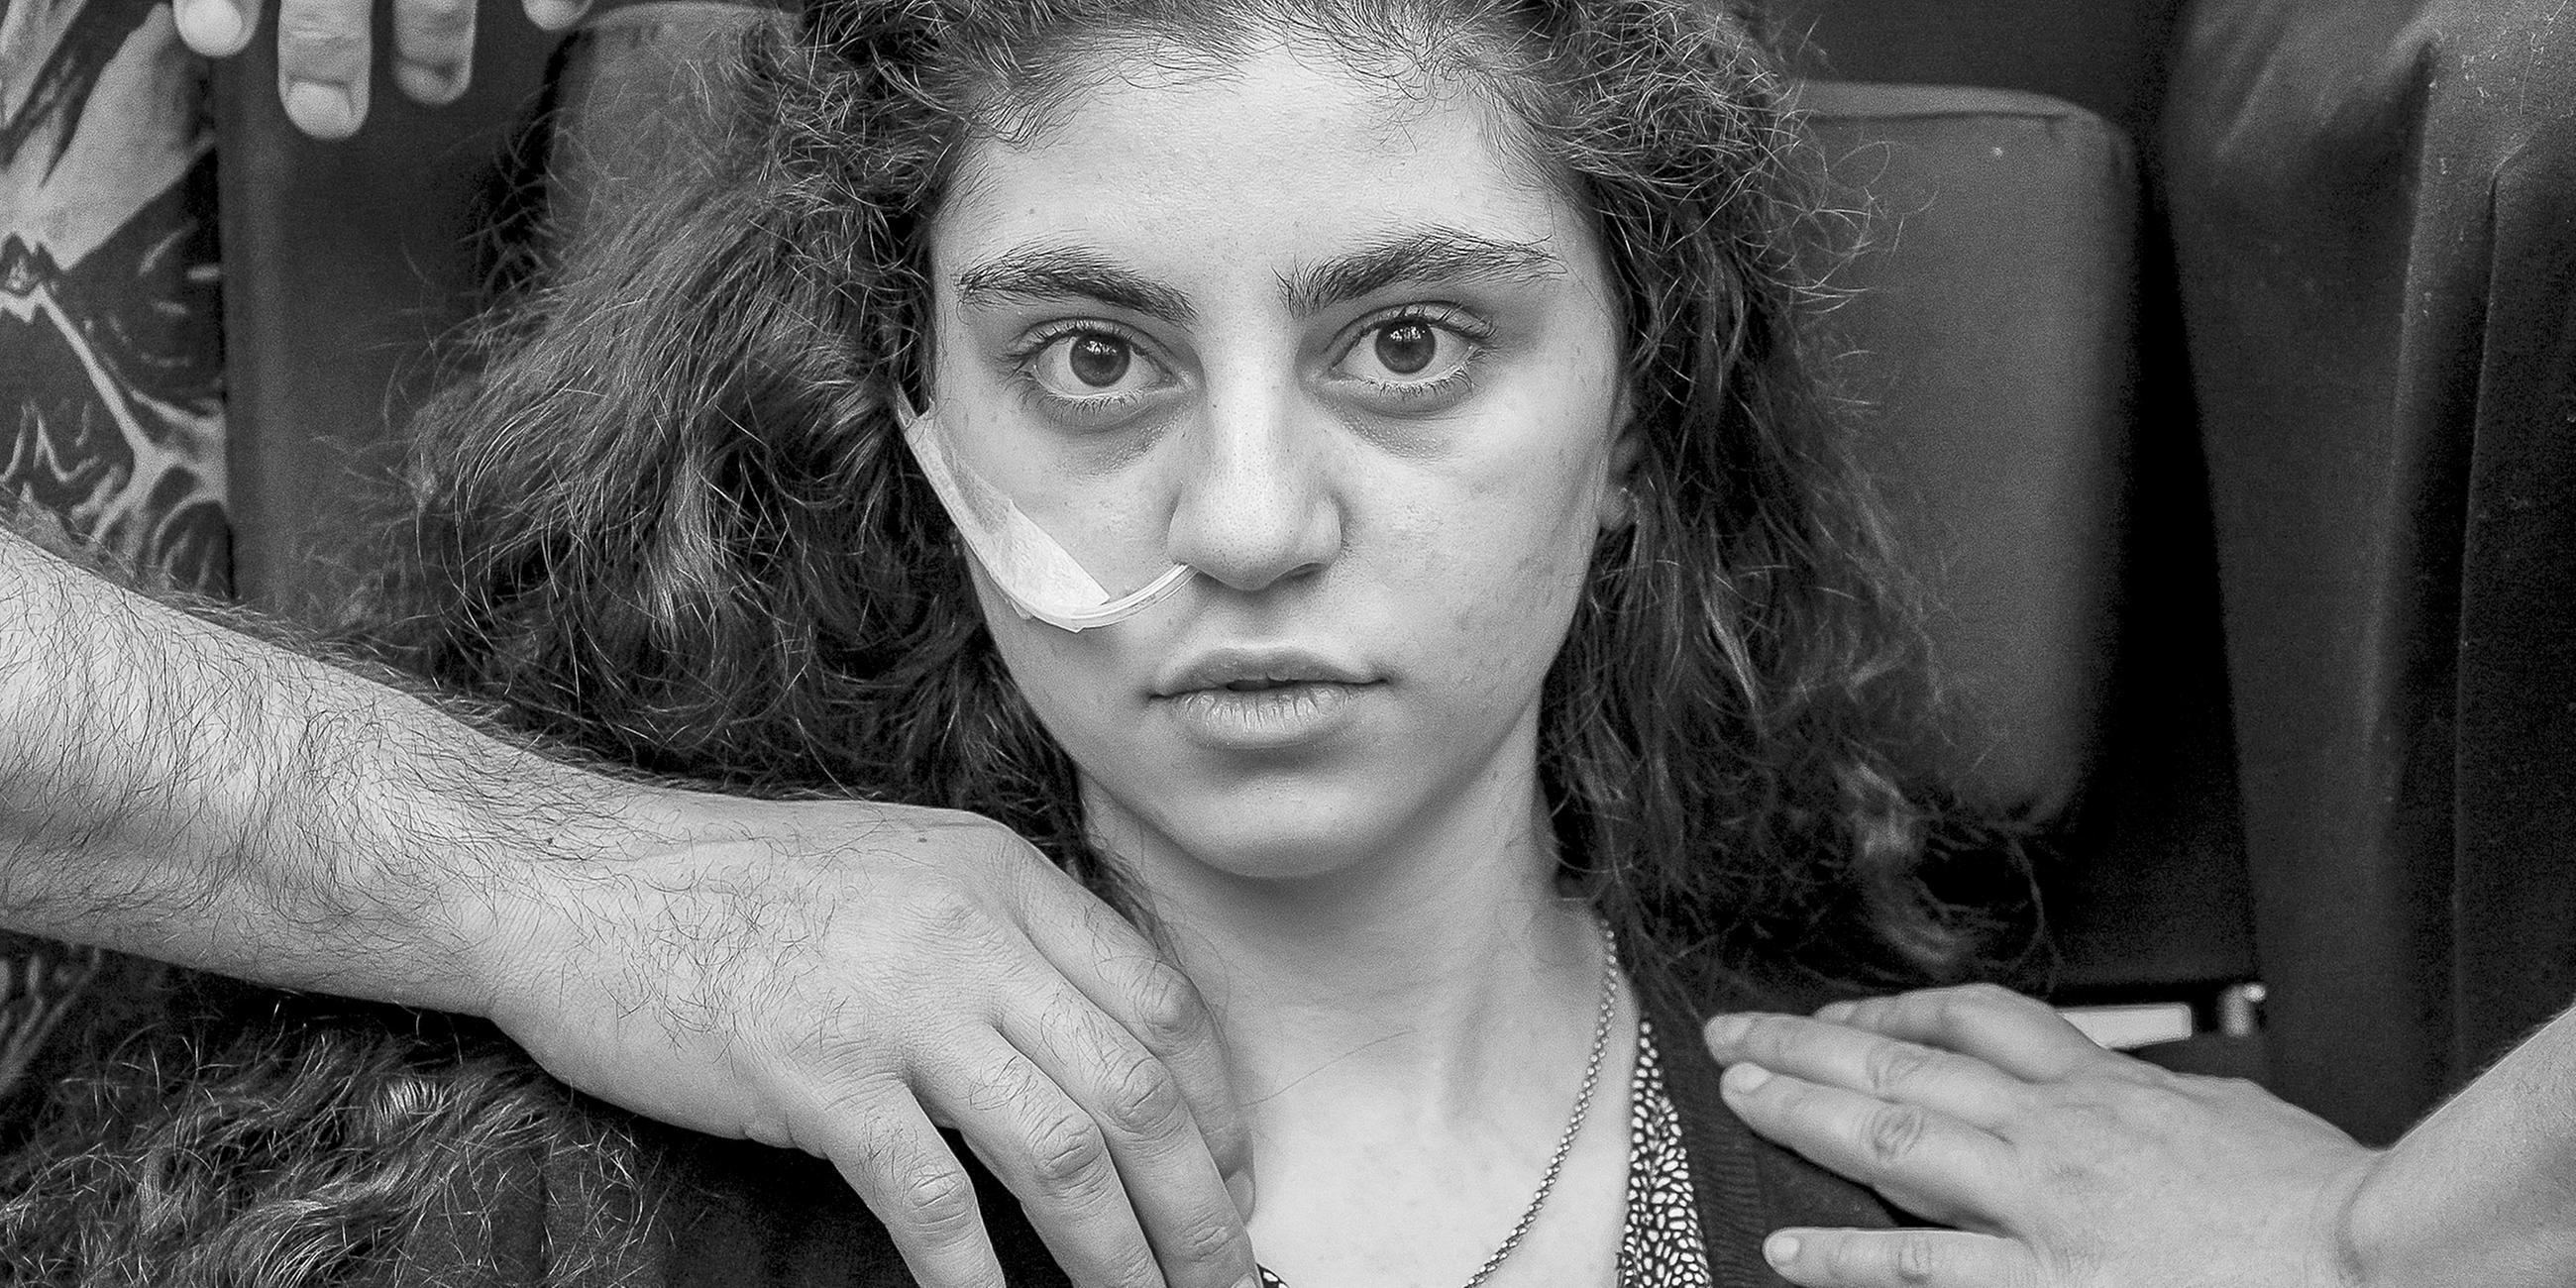 Polen, Podkowa Lesna: Ewa, ein 15-jähriges armenisches Mädchen, das kürzlich aus einem durch das Resignationssyndrom verursachten katatonischen Zustand erwacht ist, sitzt in einem Flüchtlingsaufnahmezentrum in einem Rollstuhl.